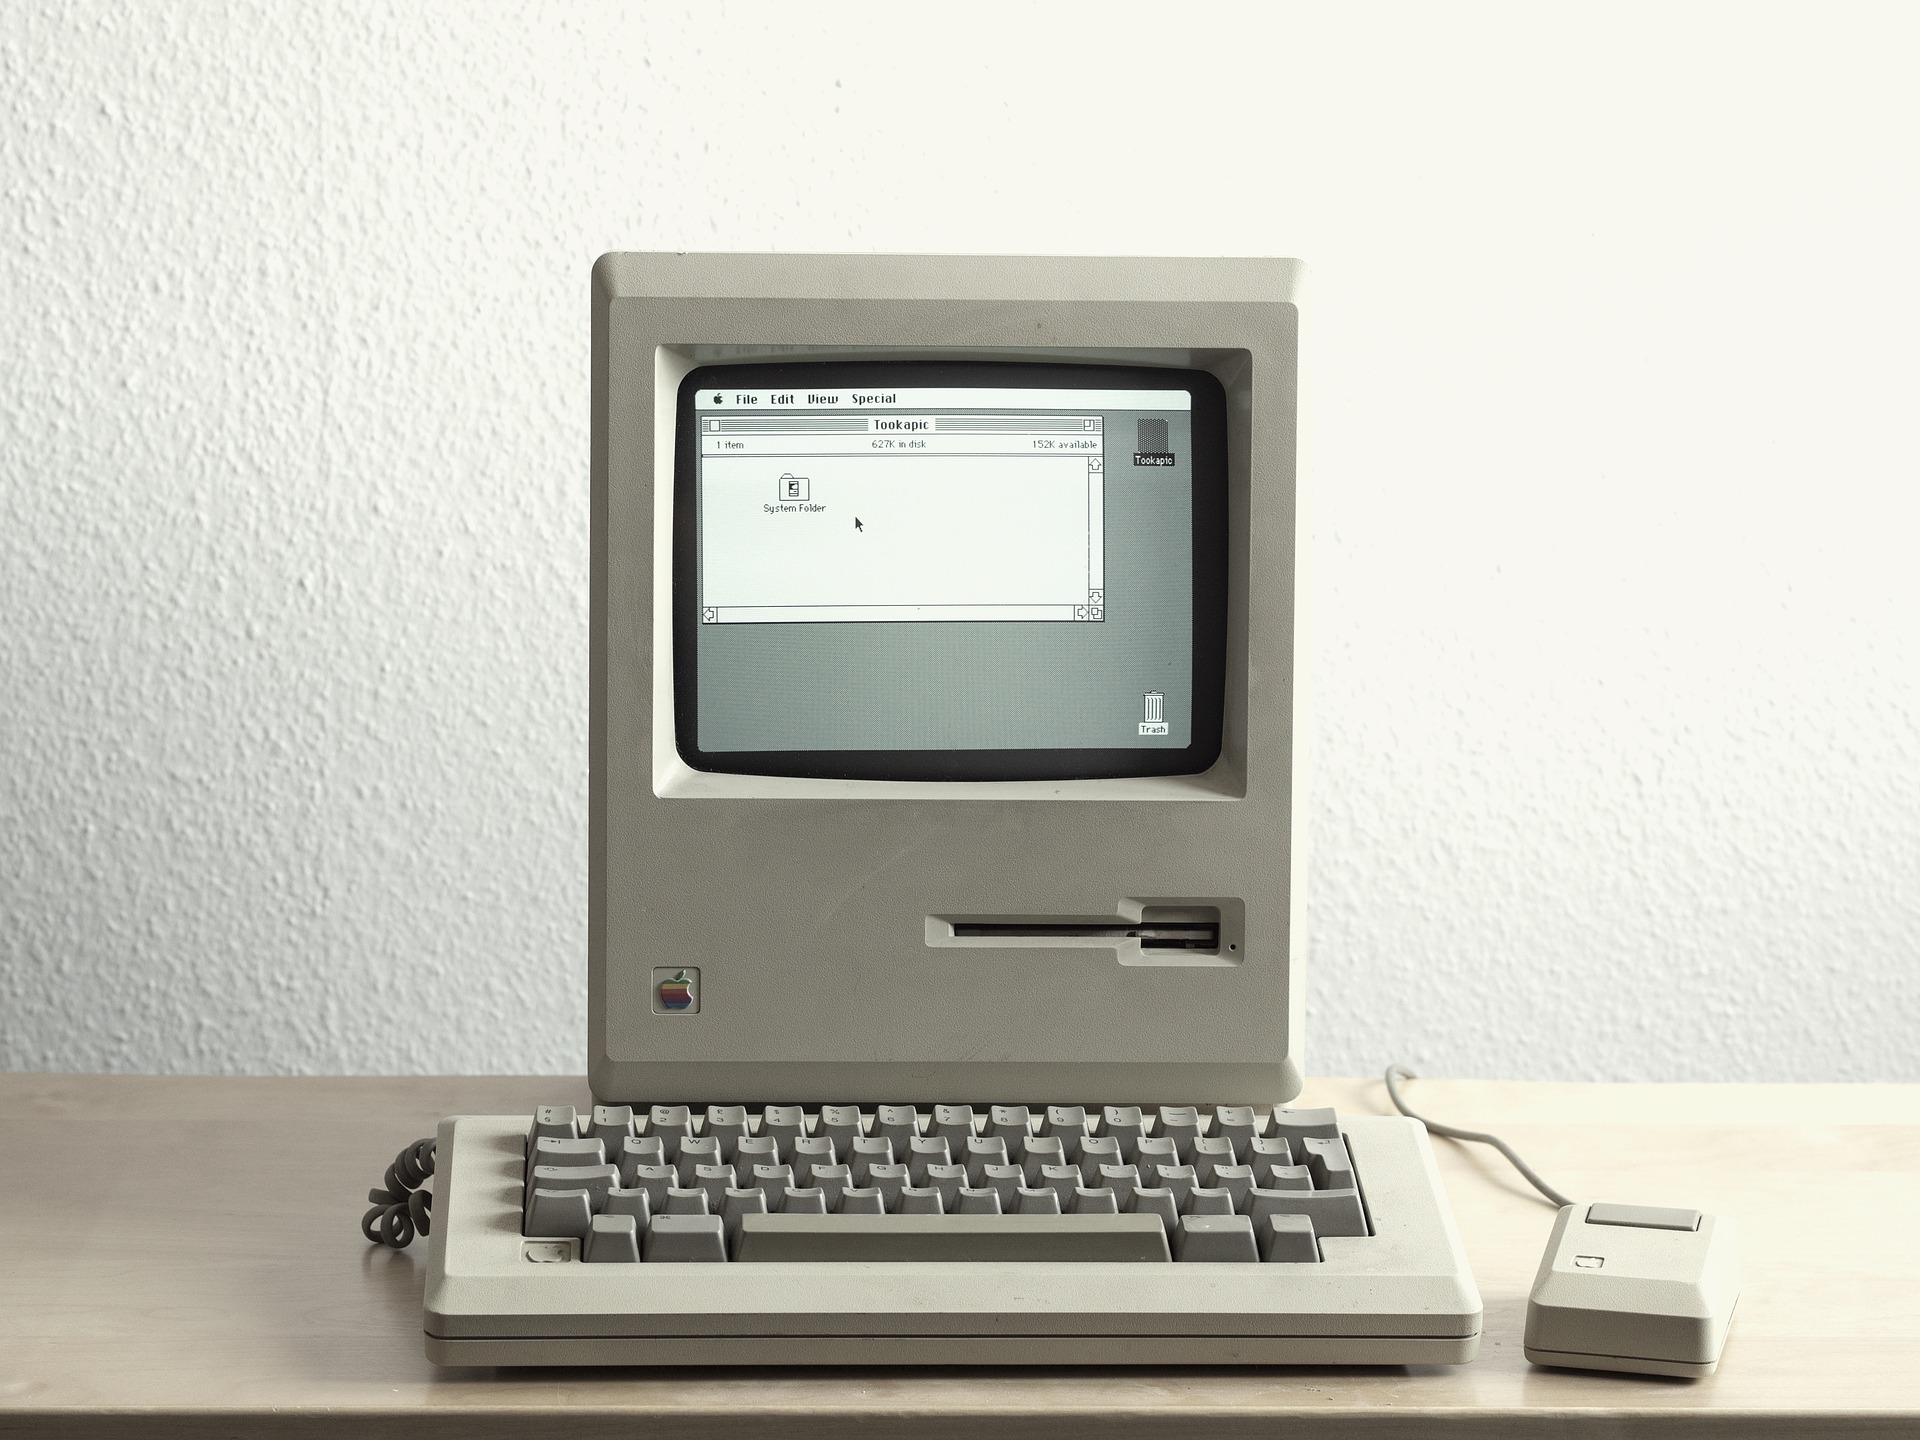 Danas je 35. godišnjica <a href="https://www.youtube.com/watch?v=1tQ5XwvjPmA"><u><b>predstavljanja</b></u></a> prvog Macintosha. <b>Steve Jobs</b> je sa smiješkom od uha do uha iz torbe na pozornici izvukao prvu generaciju kompjutera Macintosh, a publika je podivljala.
<br>
<br>
Za tadašnjih 2495 dolara, kupci su dobili računalo opremljeno Motorolinim procesorom 68000, uparenim sa 128 KB RAM memorije. Imao je ekran od devet inča, s rezolucijom od 512x342 piksela. Macintosh je povijesni kompjuter, budući da je bio prvo komercijalno računalo s grafičkim korisničkim sučeljem, mišem i 3.5 inčnim disketnim pogonom.